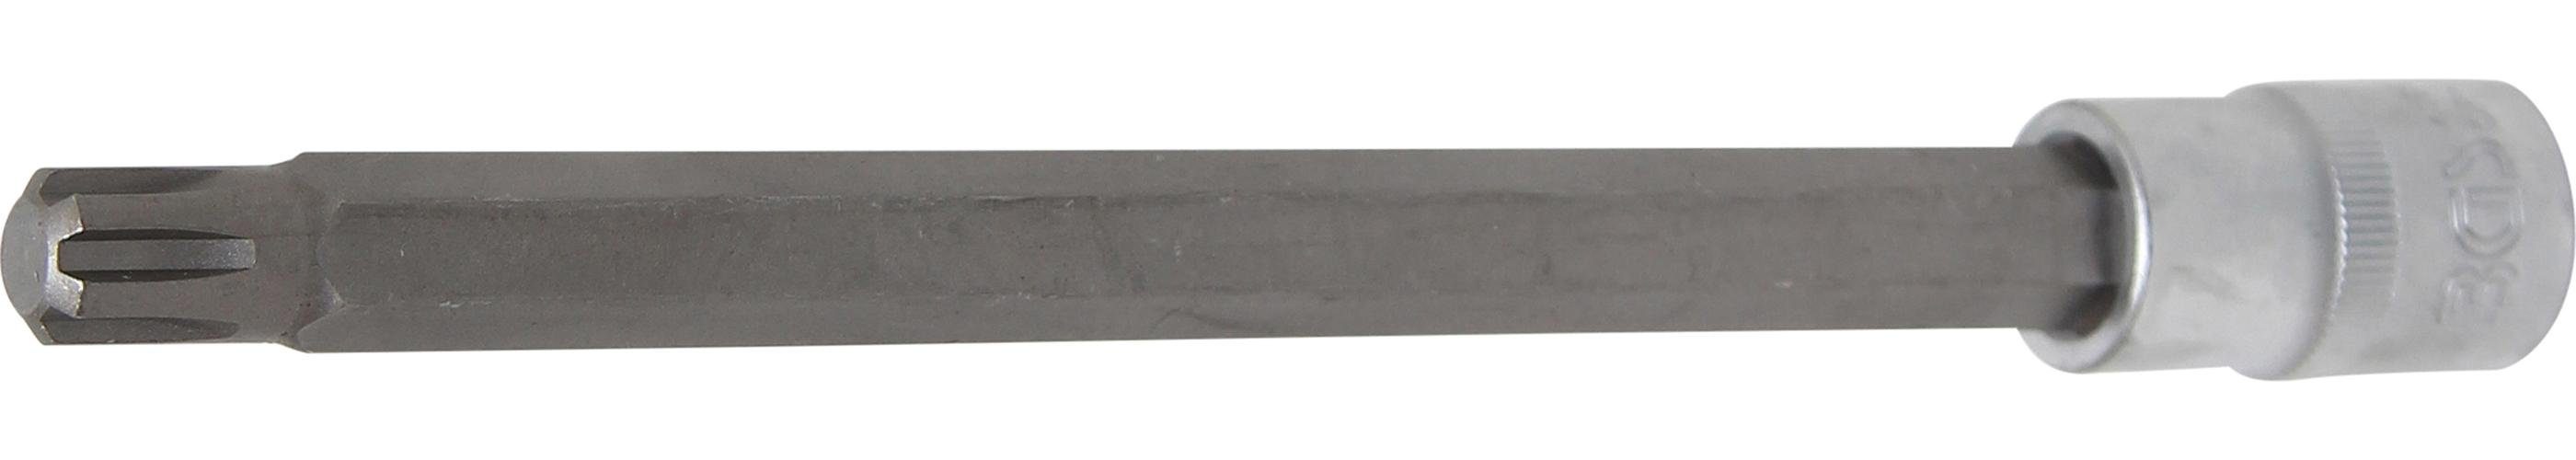 BGS technic Bit-Schraubendreher Bit-Einsatz, Länge 200 mm, Antrieb Innenvierkant 12,5 mm (1/2), Keil-Profil (für RIBE) M12